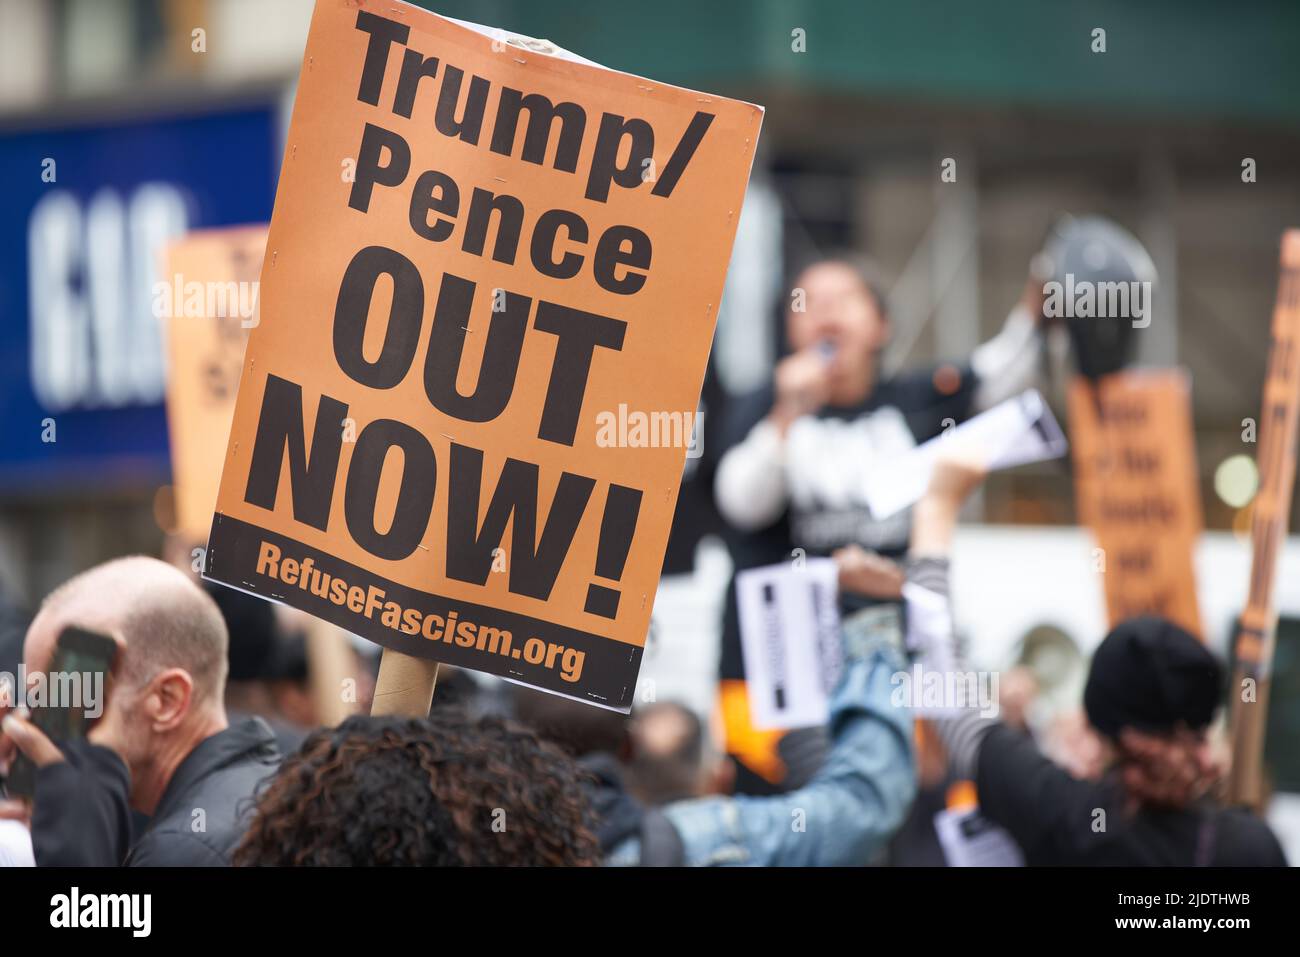 Manhattan, New York, États-Unis - 26 octobre. 2019: Trump proteste à New York, signez avec Trump Pence Out Now écrivant. Banque D'Images